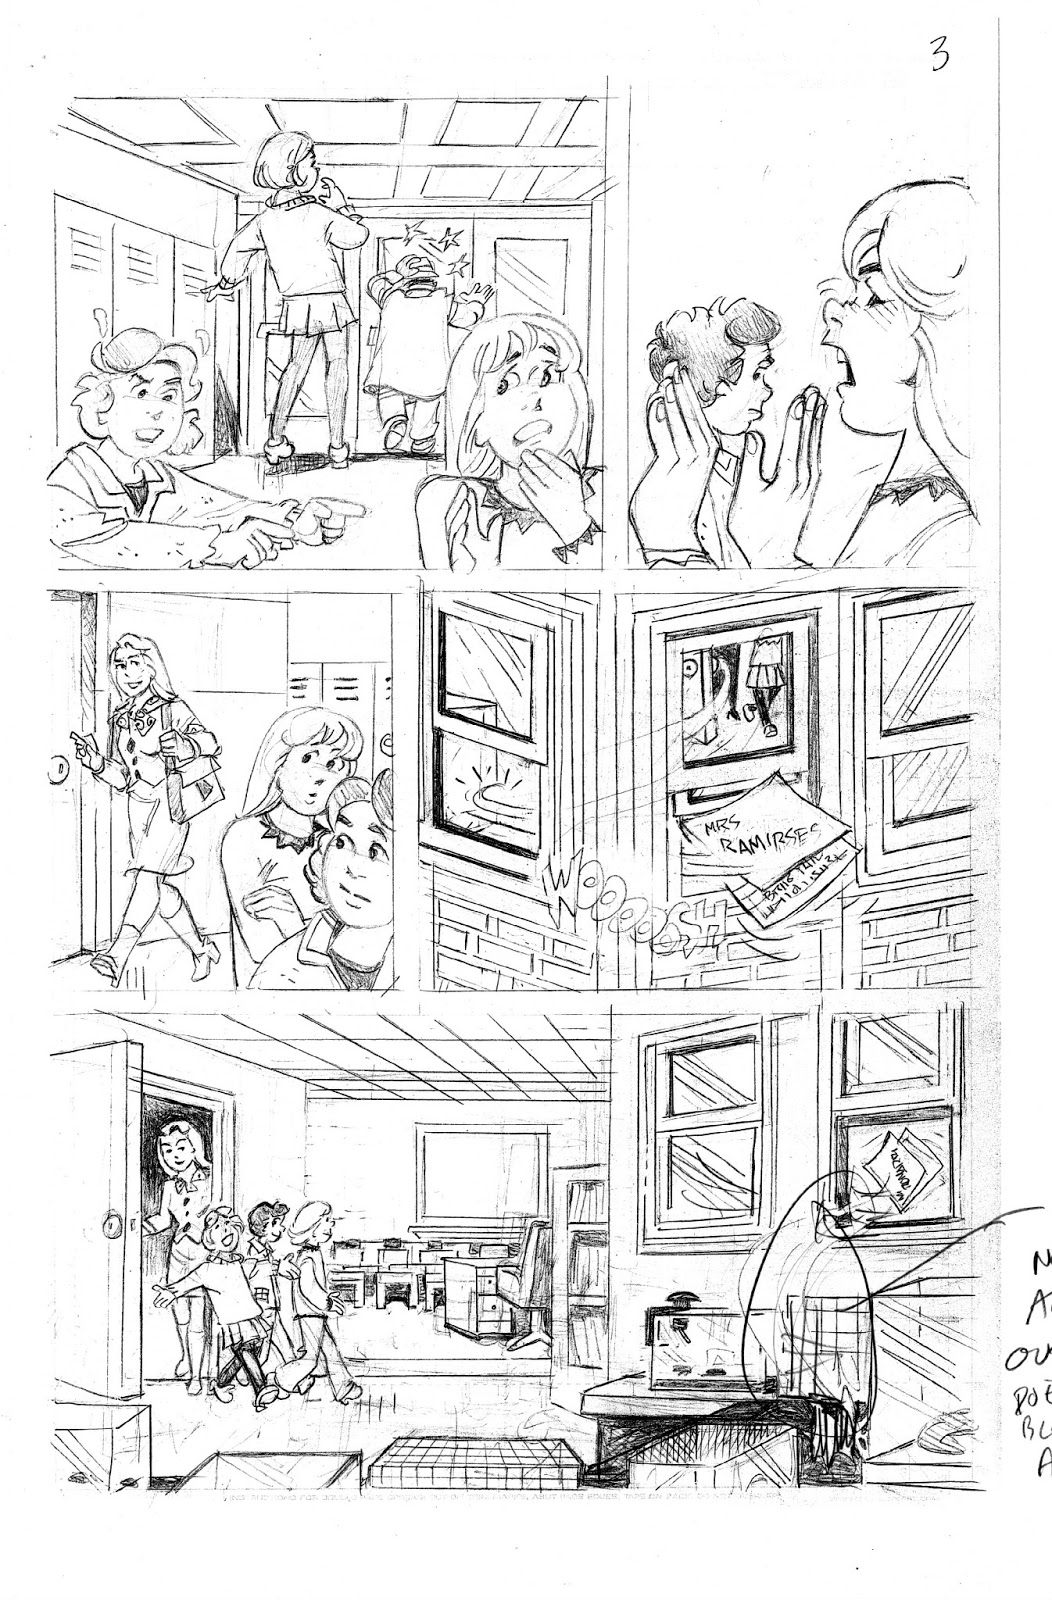 Nancy Drew Sleuth: Nancy Drew Clue Crew Graphic Novel Step-By-Step